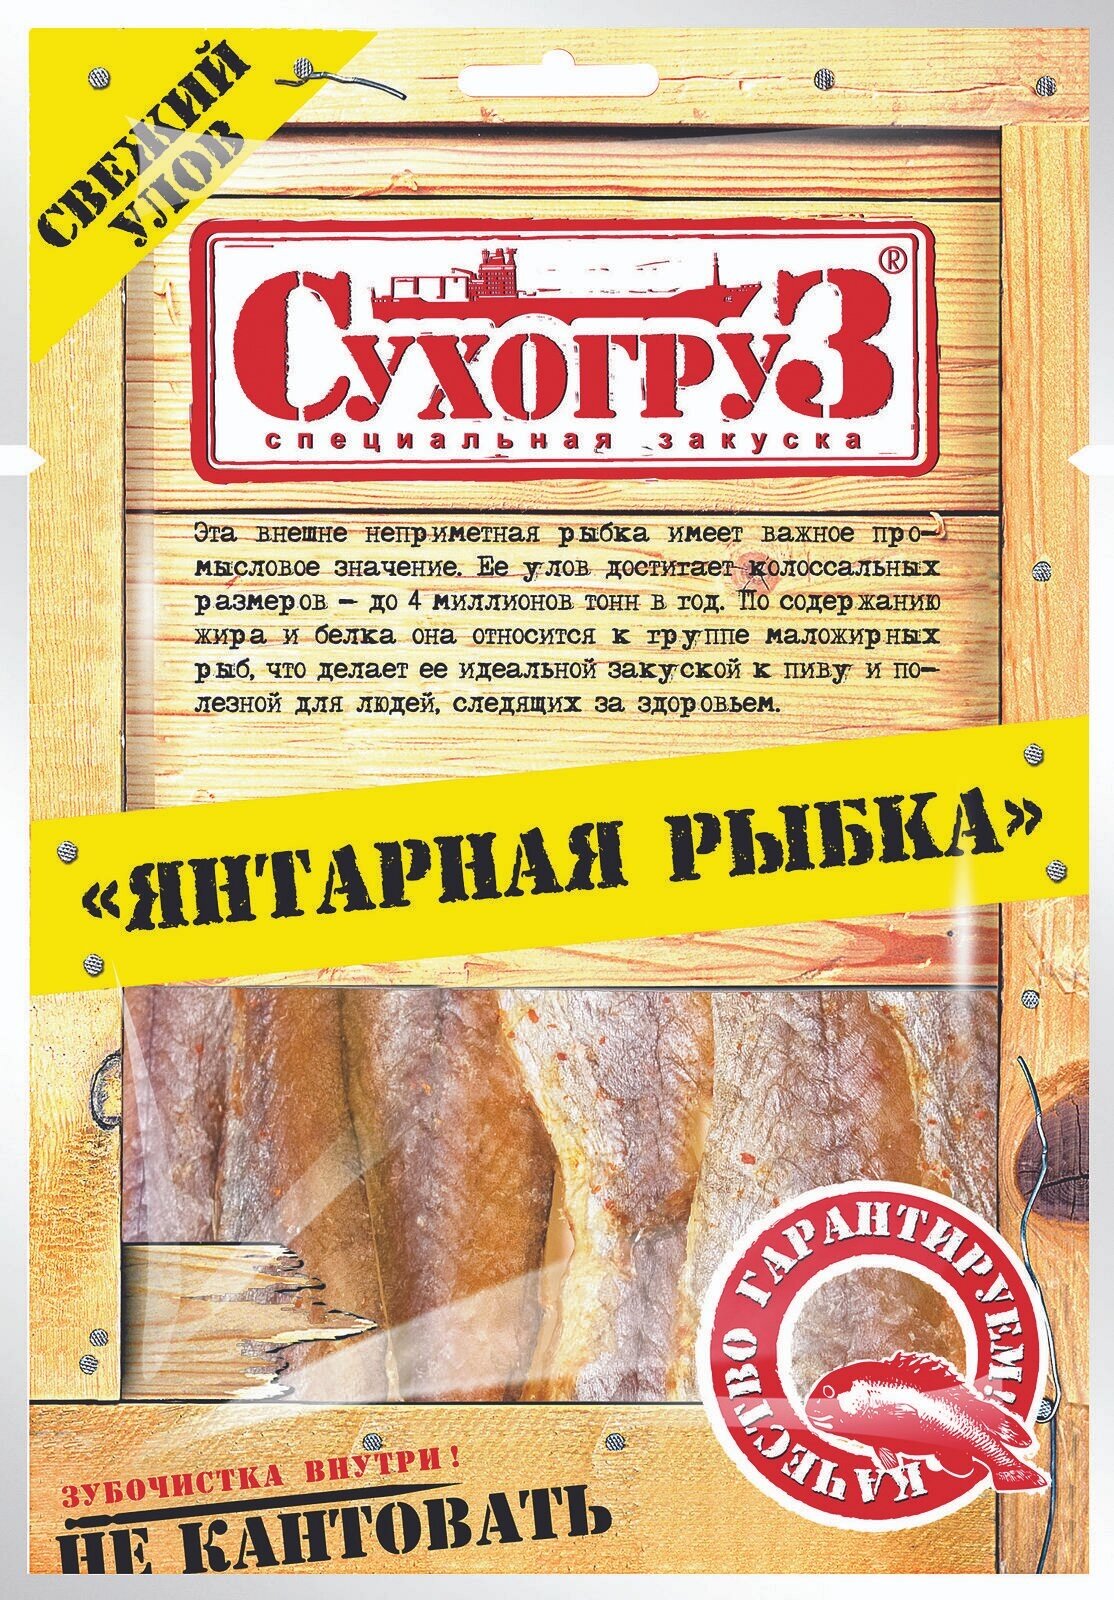 Упаковка из 20 штук Янтарная рыбка "Сухогруз" сушено-вяленая 70г